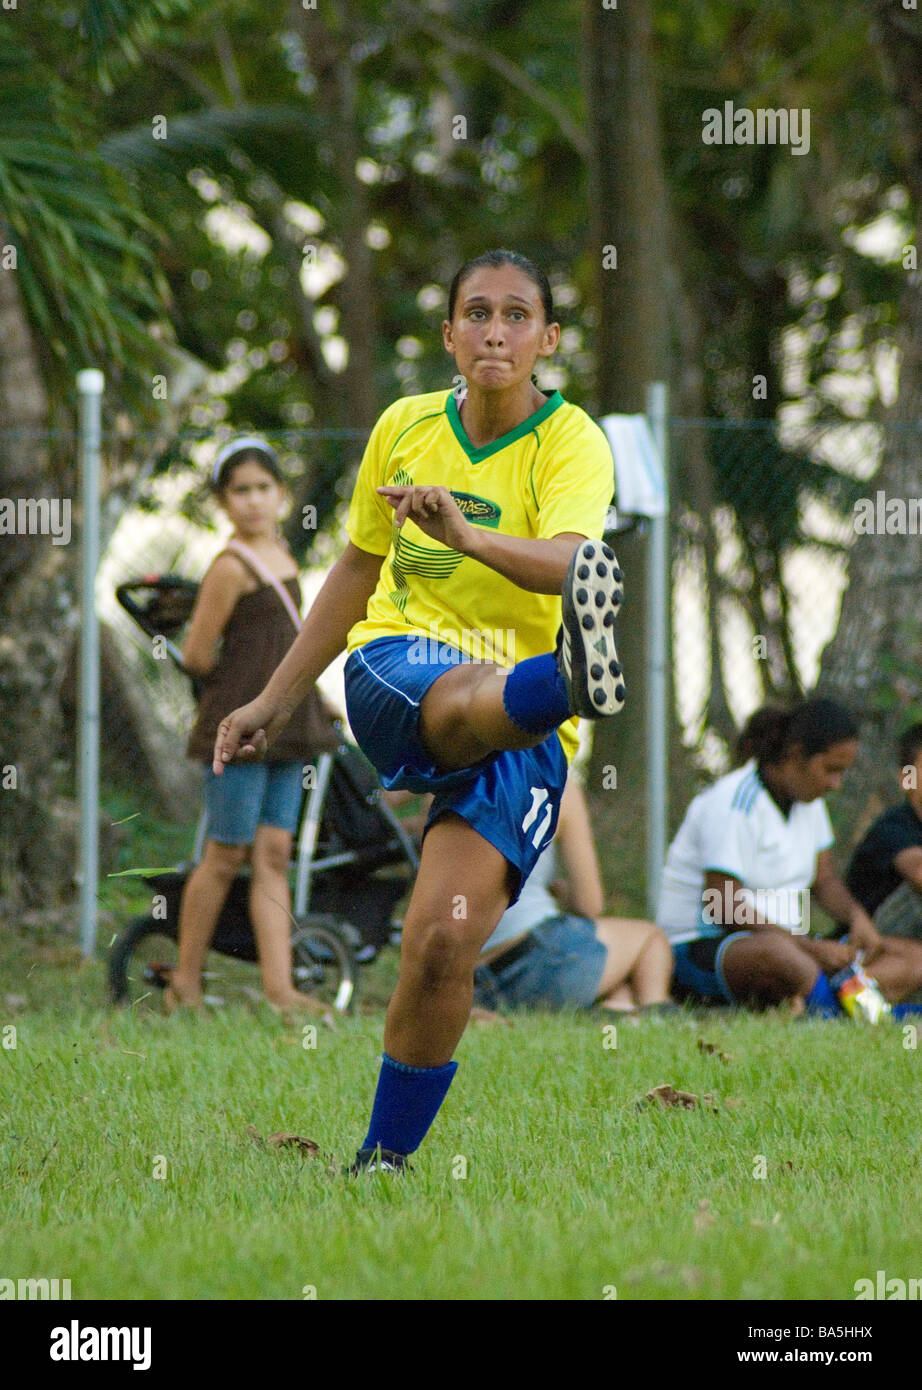 Female soccer match during a fiesta in Costa Rica Stock Photo